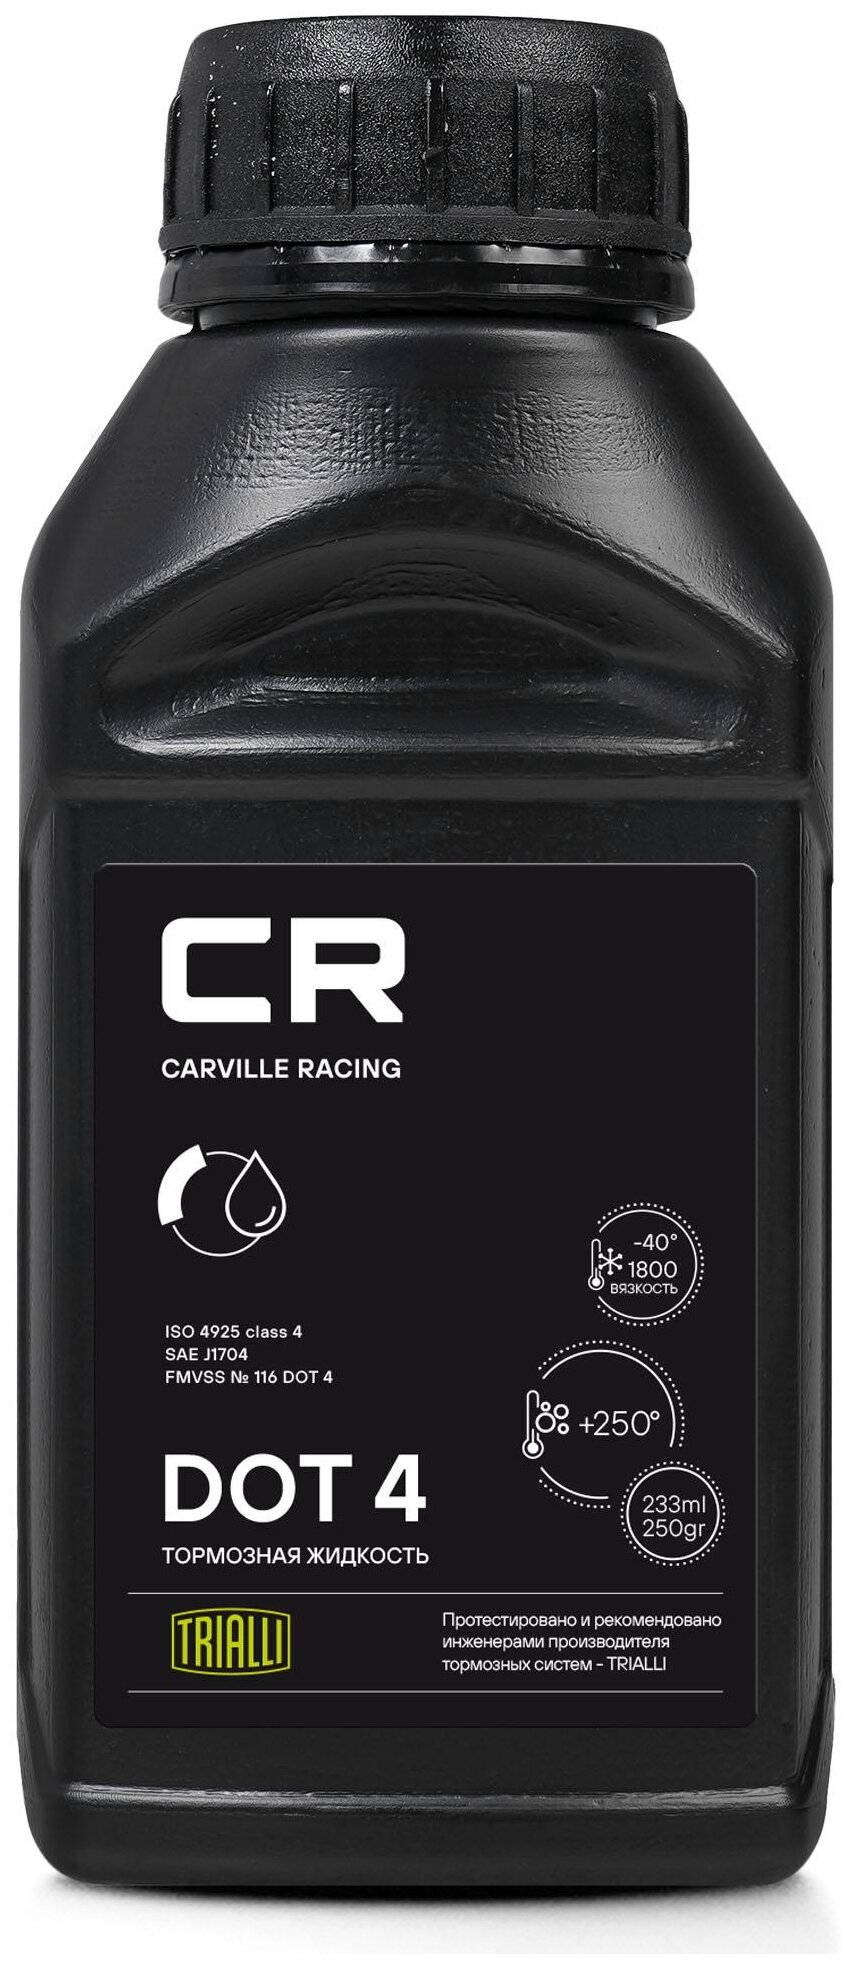 Тормозная жидкость CARVILLE RACING DOT 4